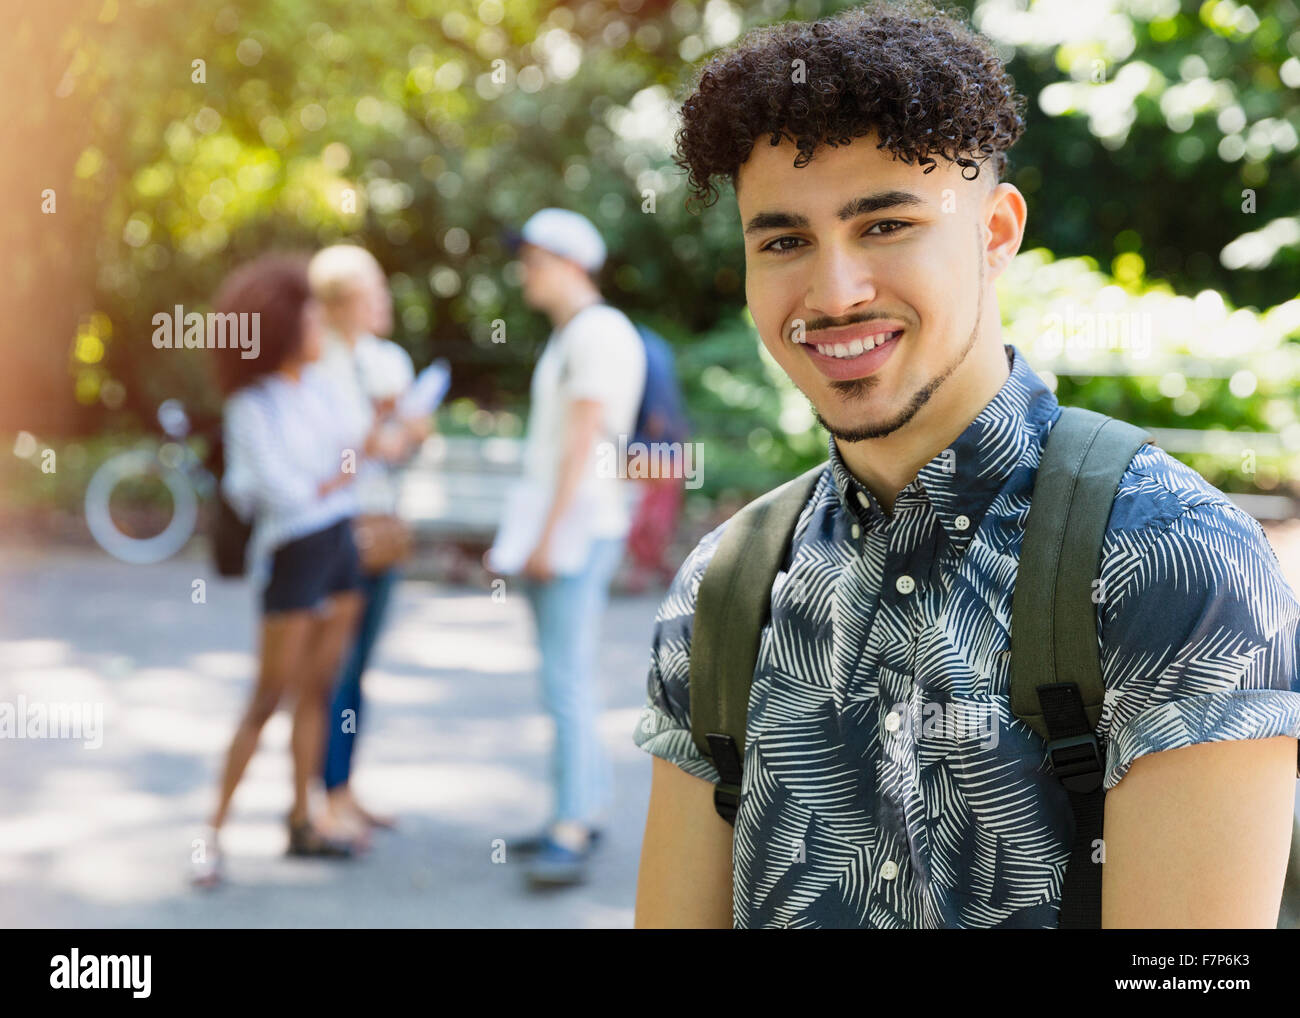 Porträt, Lächeln Mann mit lockiges schwarzes Haar im park Stockfoto